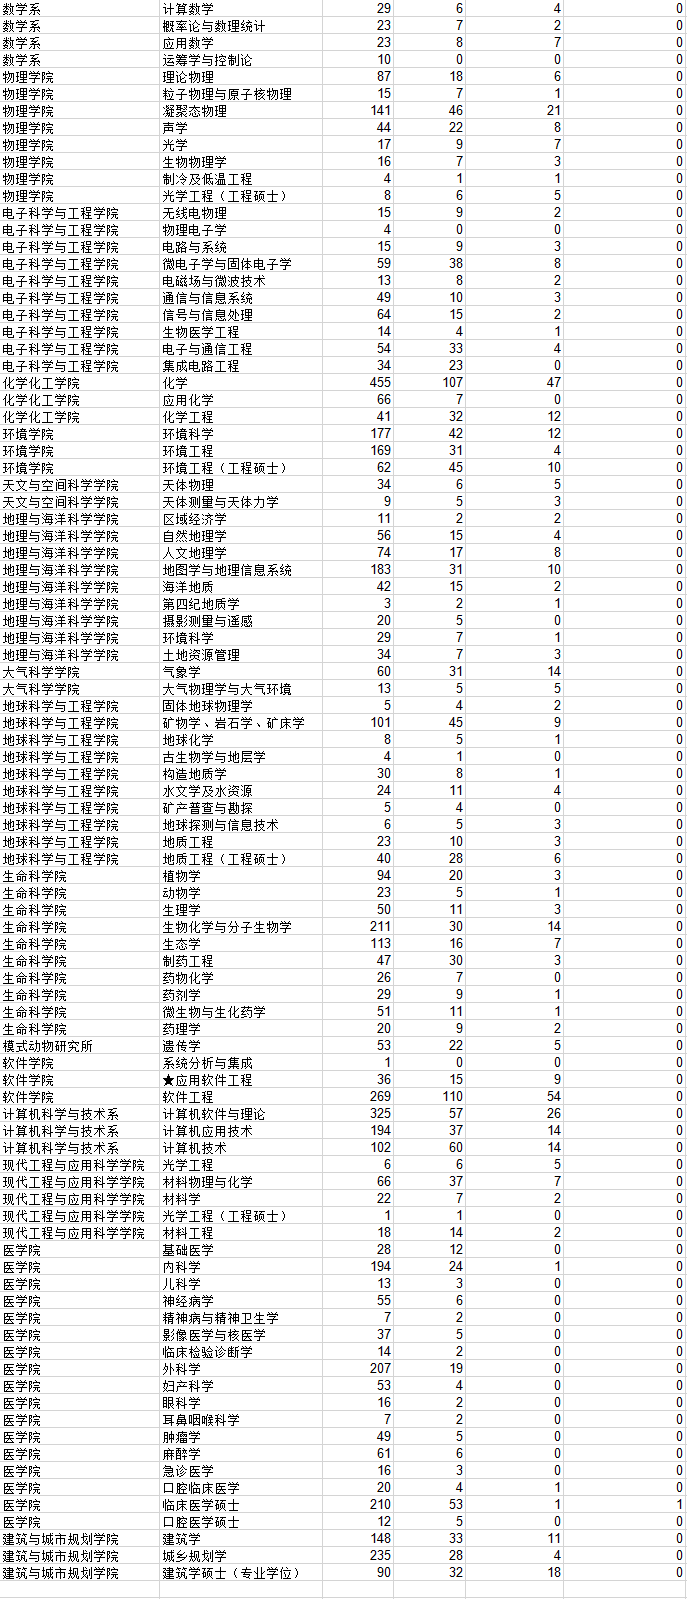 南京大学2012研究生报考录取比例